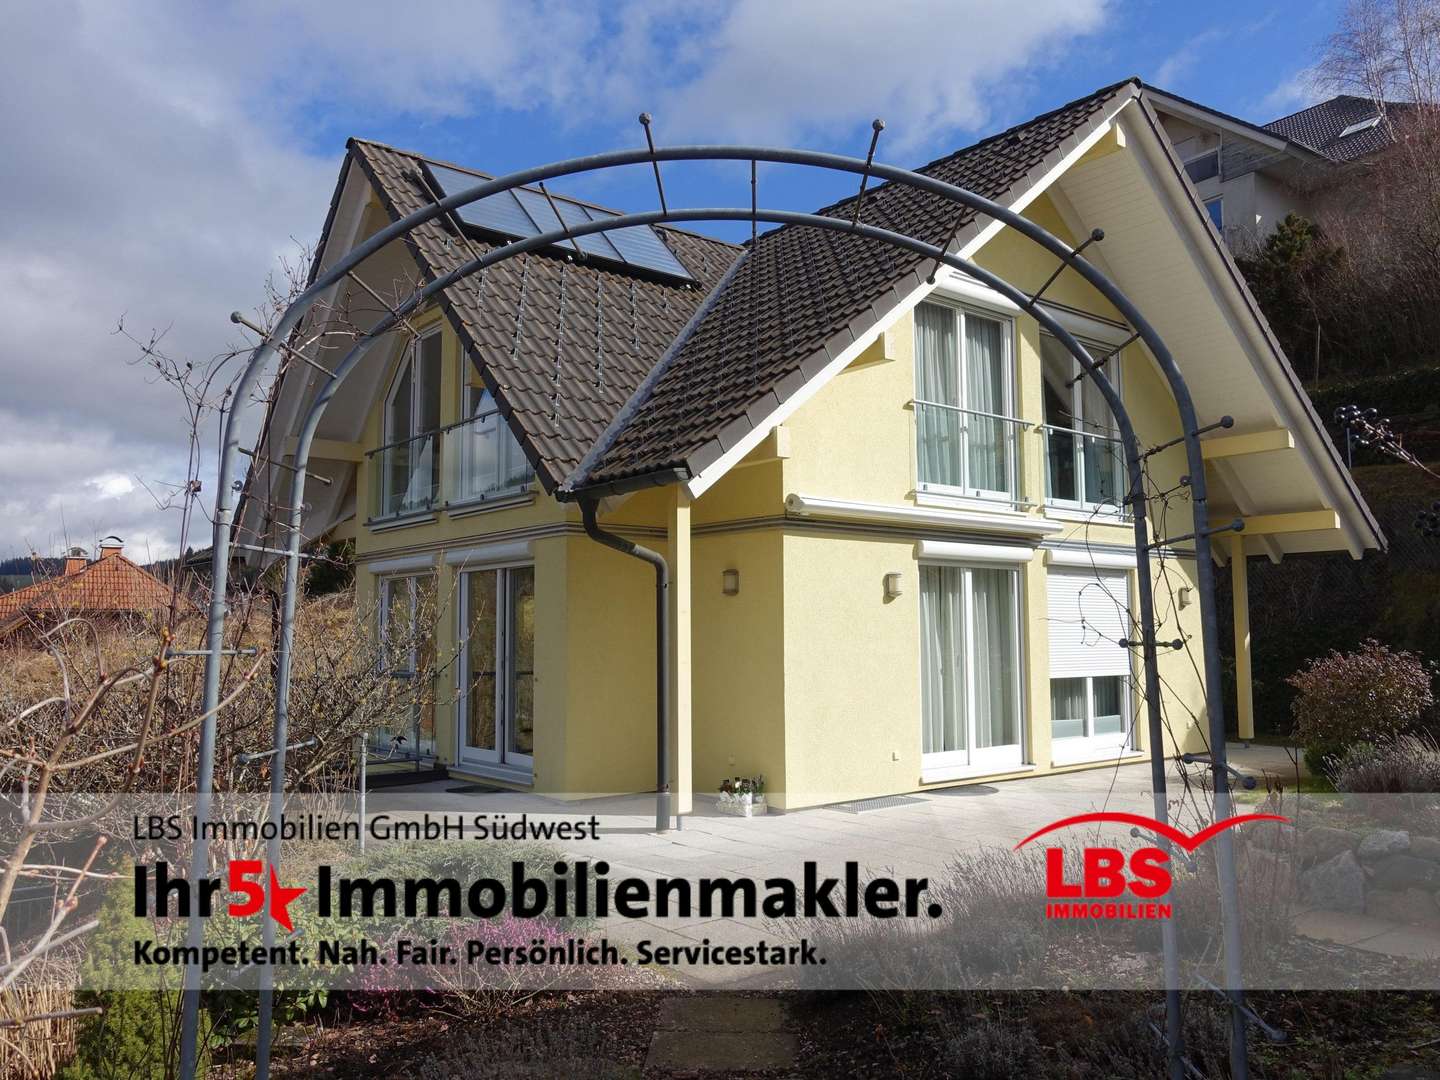 null - Einfamilienhaus in 79822 Titisee-Neustadt mit 158m² kaufen